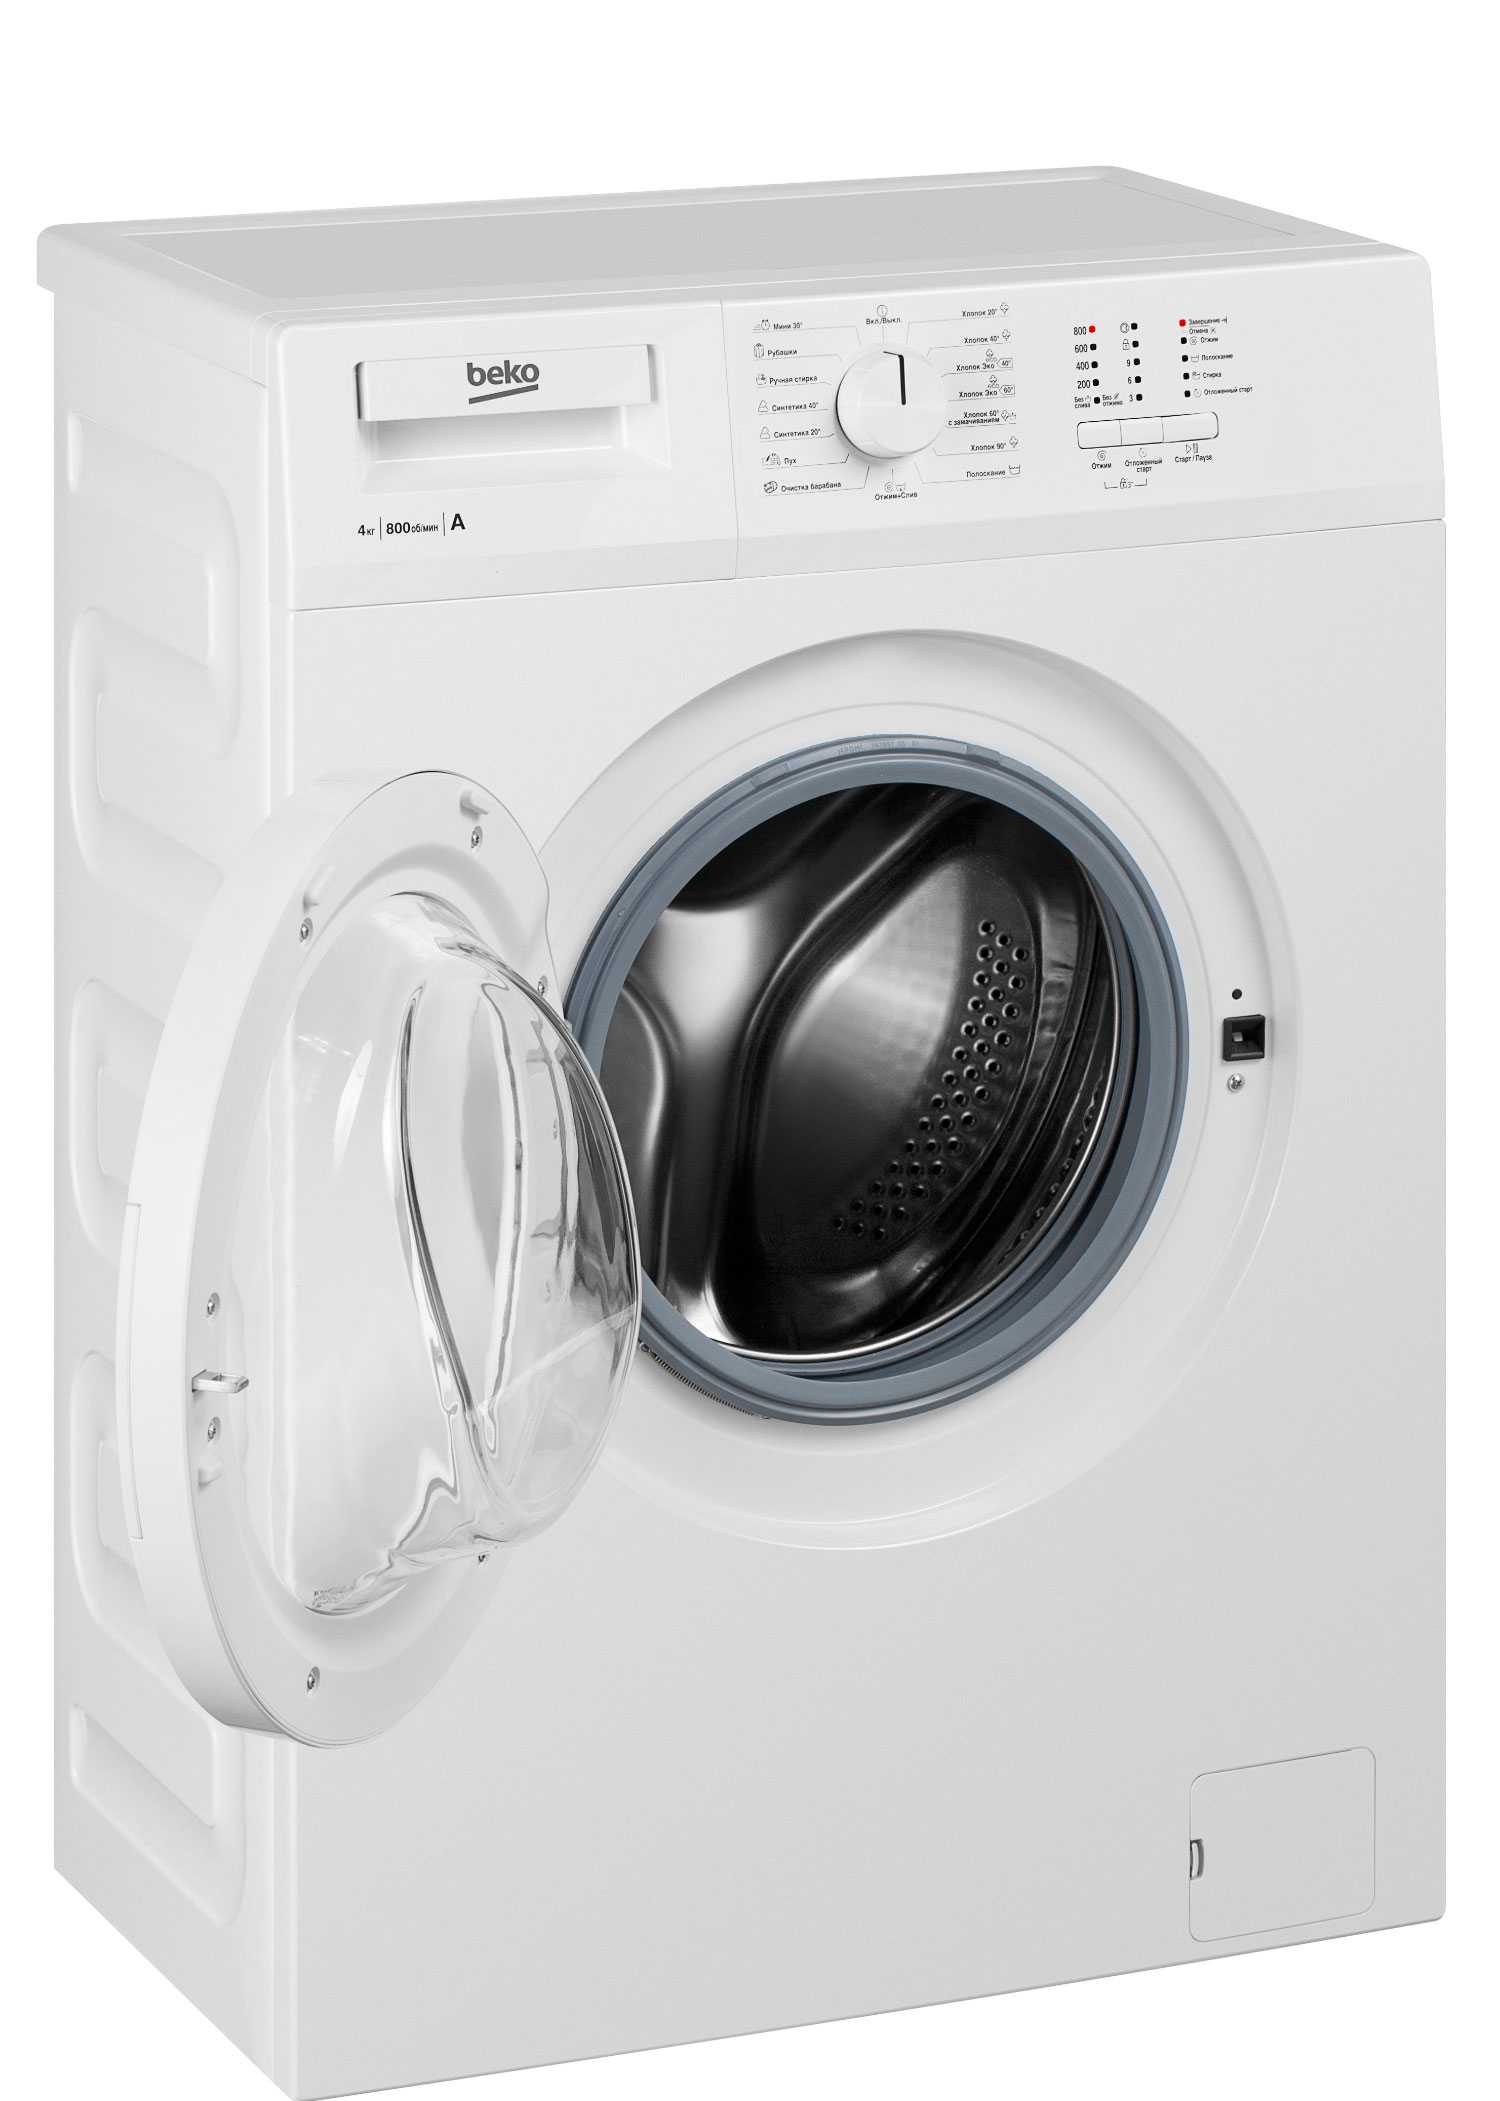 Что лучше стиральная машина индезит или беко?